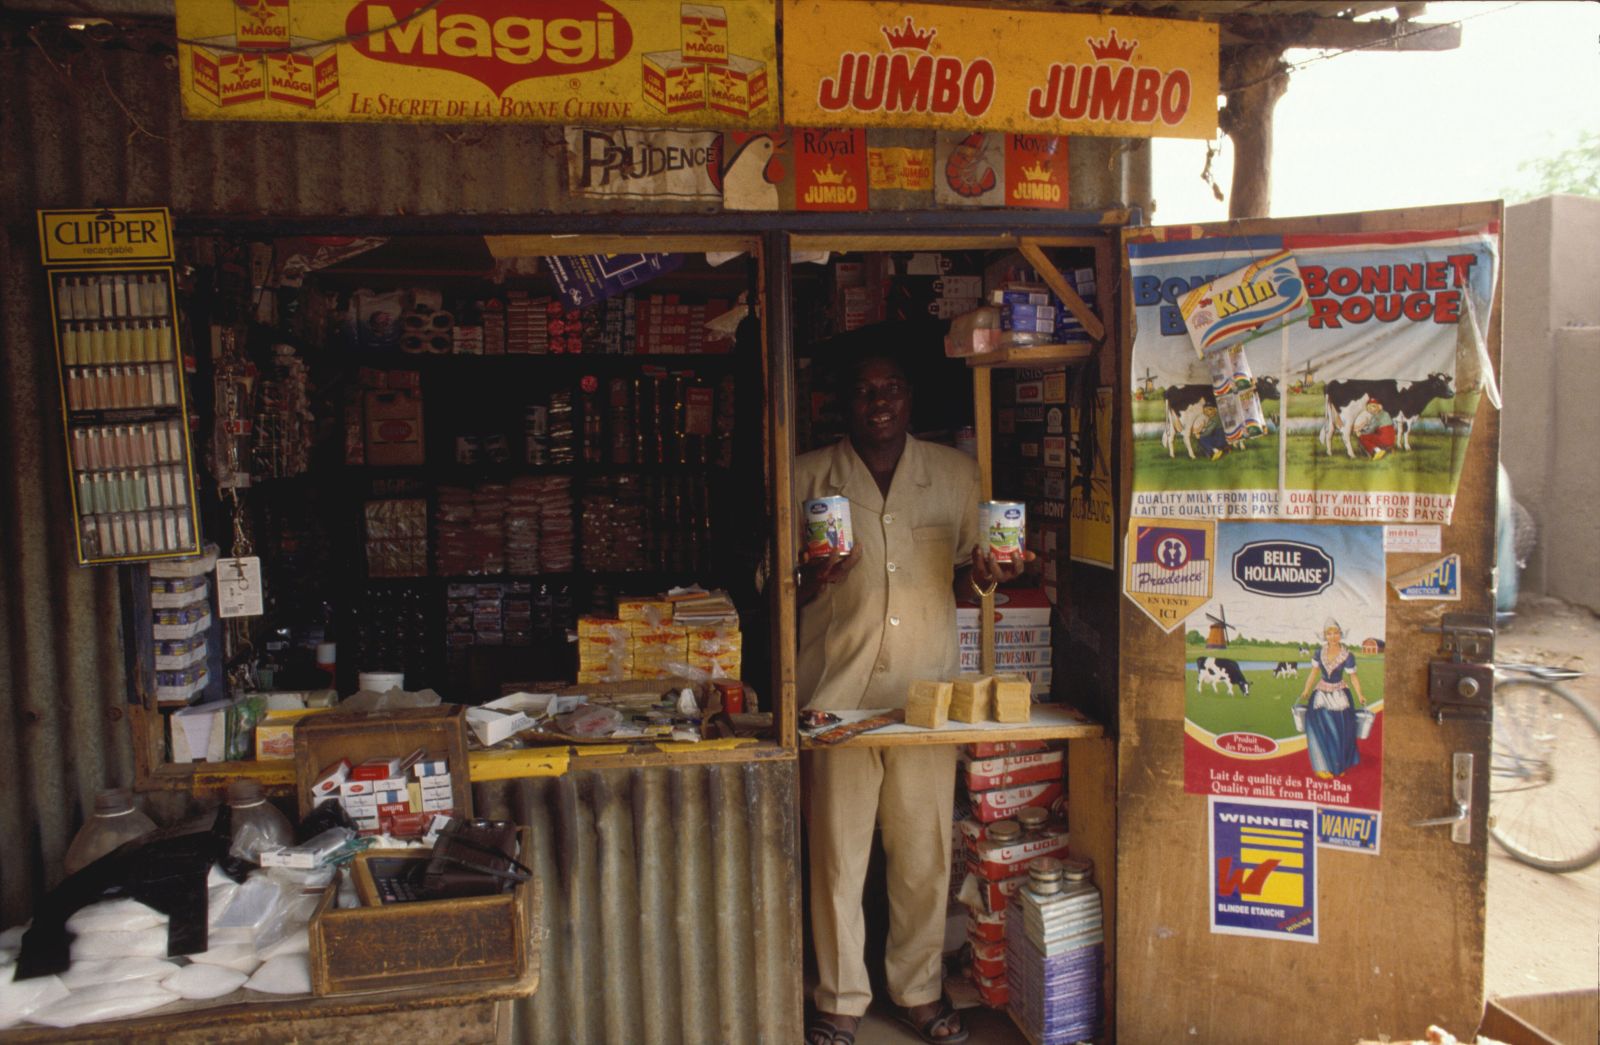 Ein Händler in Burkina Faso verkauft niederländische Produkte, darunter Milchpulver, in seinem kleinen Laden.